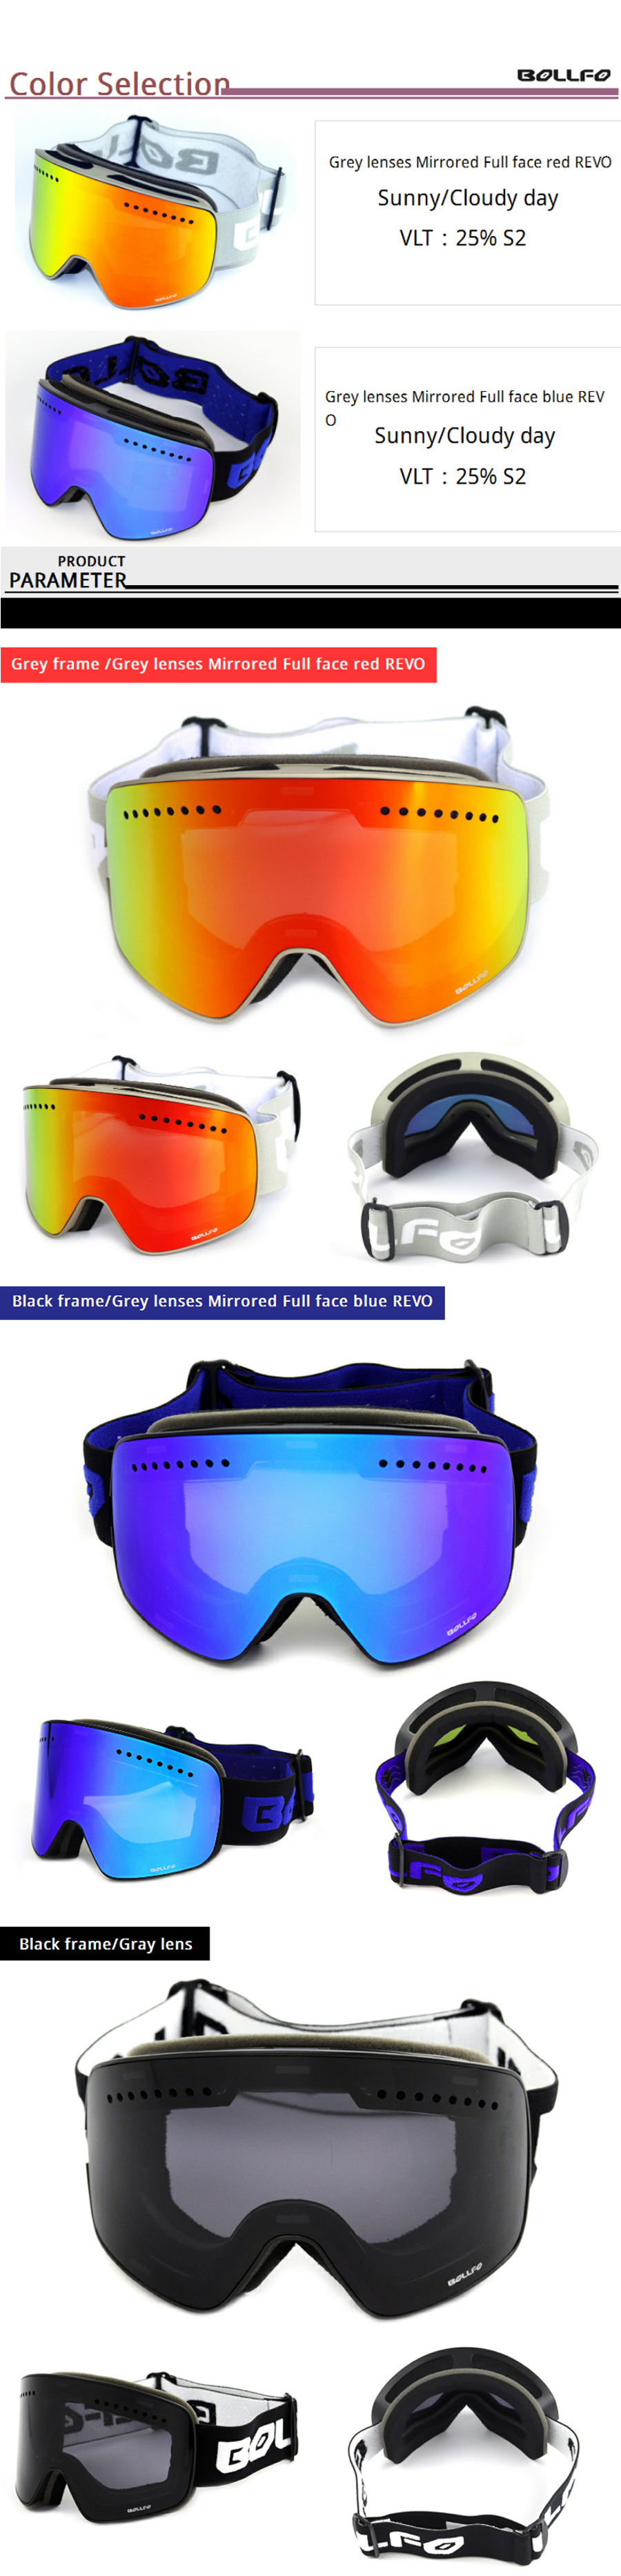 BOLLFO-Magnetic-Ski-Goggles-UV400-Double-Lens-Anti-fog-Mountaineering-Glasses-Men-Women-Snowmobile-S-1754163-3